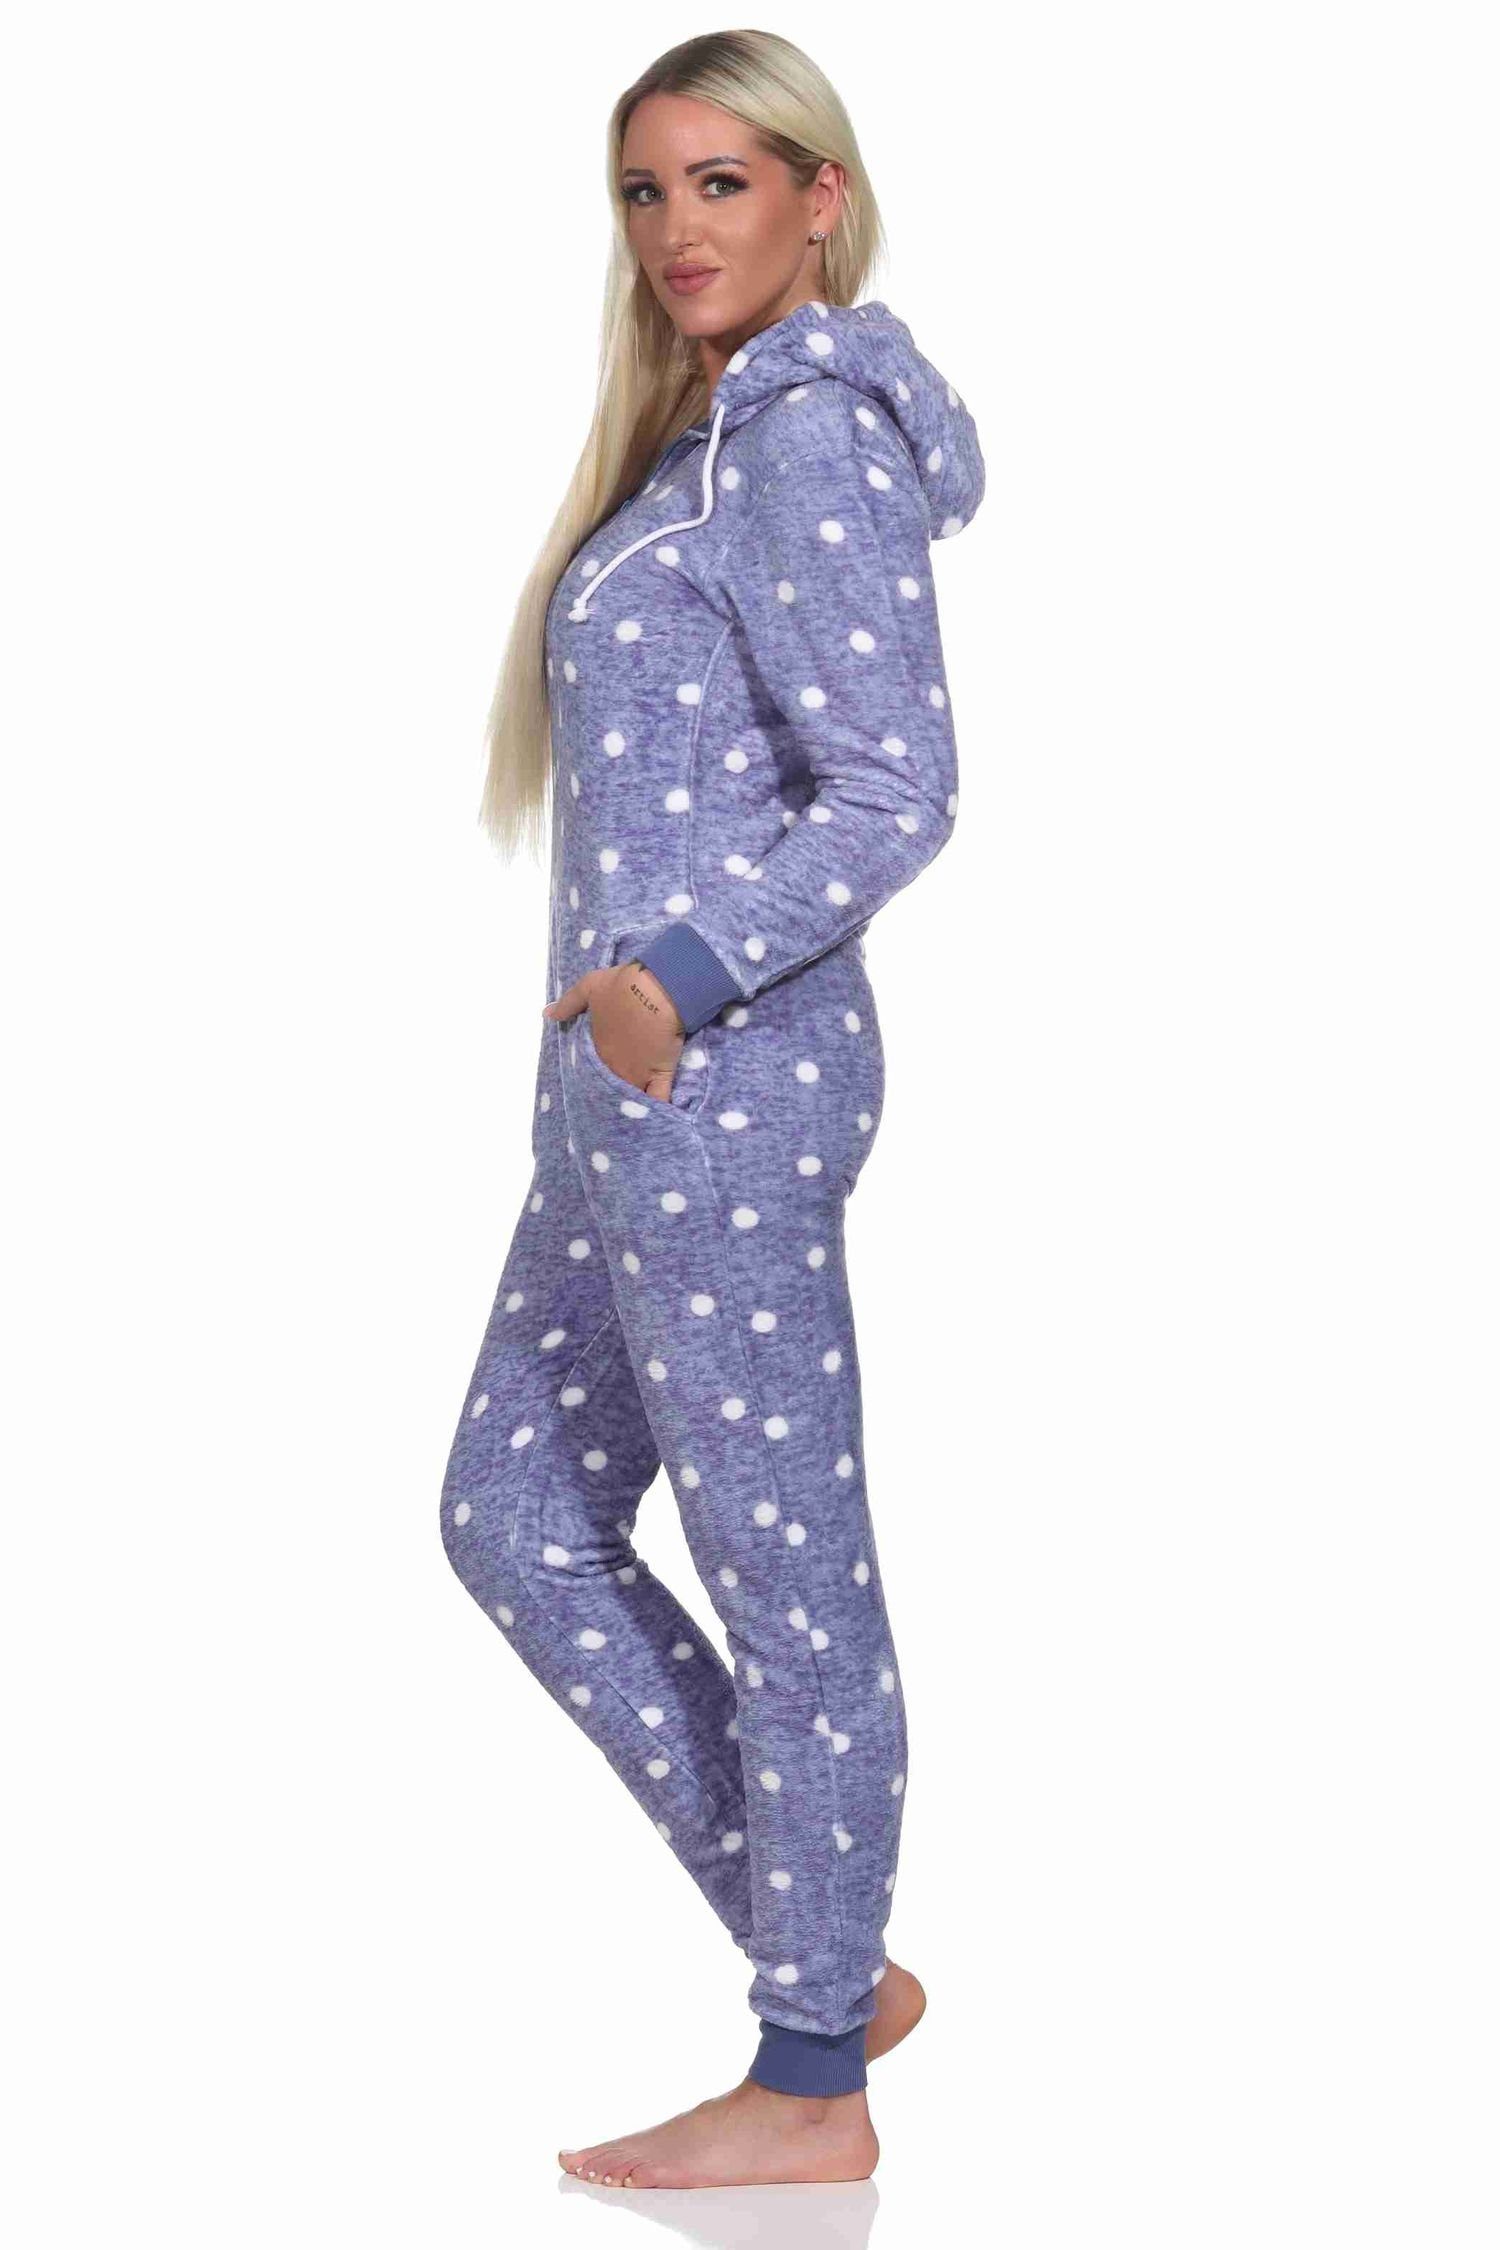 Tupfen Damen Normann blau warmer Punkte Optik Jumpsuit Schlafanzug in Pyjama Kuschelig